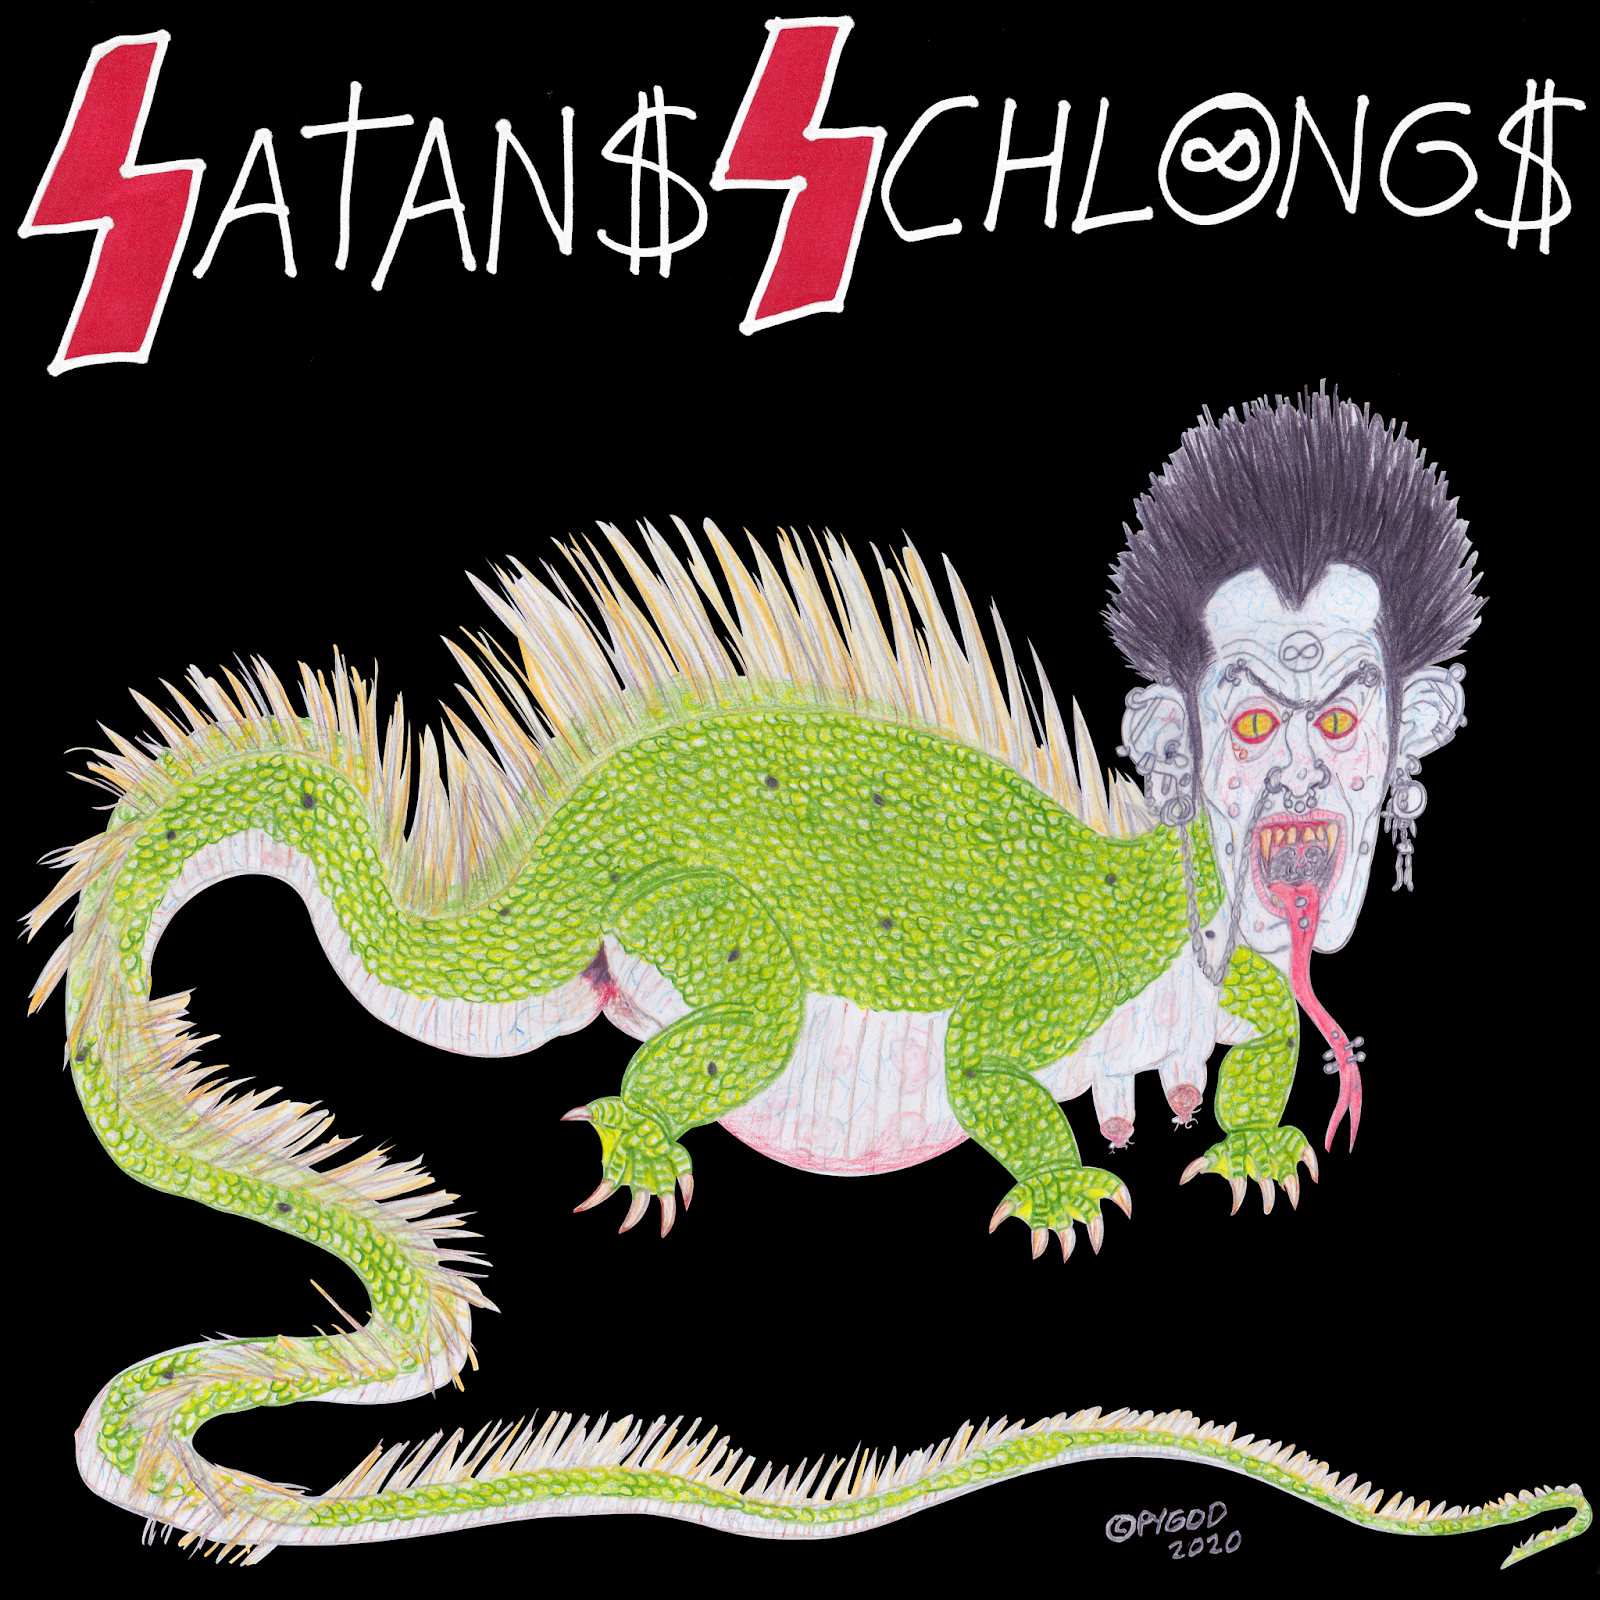 Lizard Man 2020 - Satans Schlongs